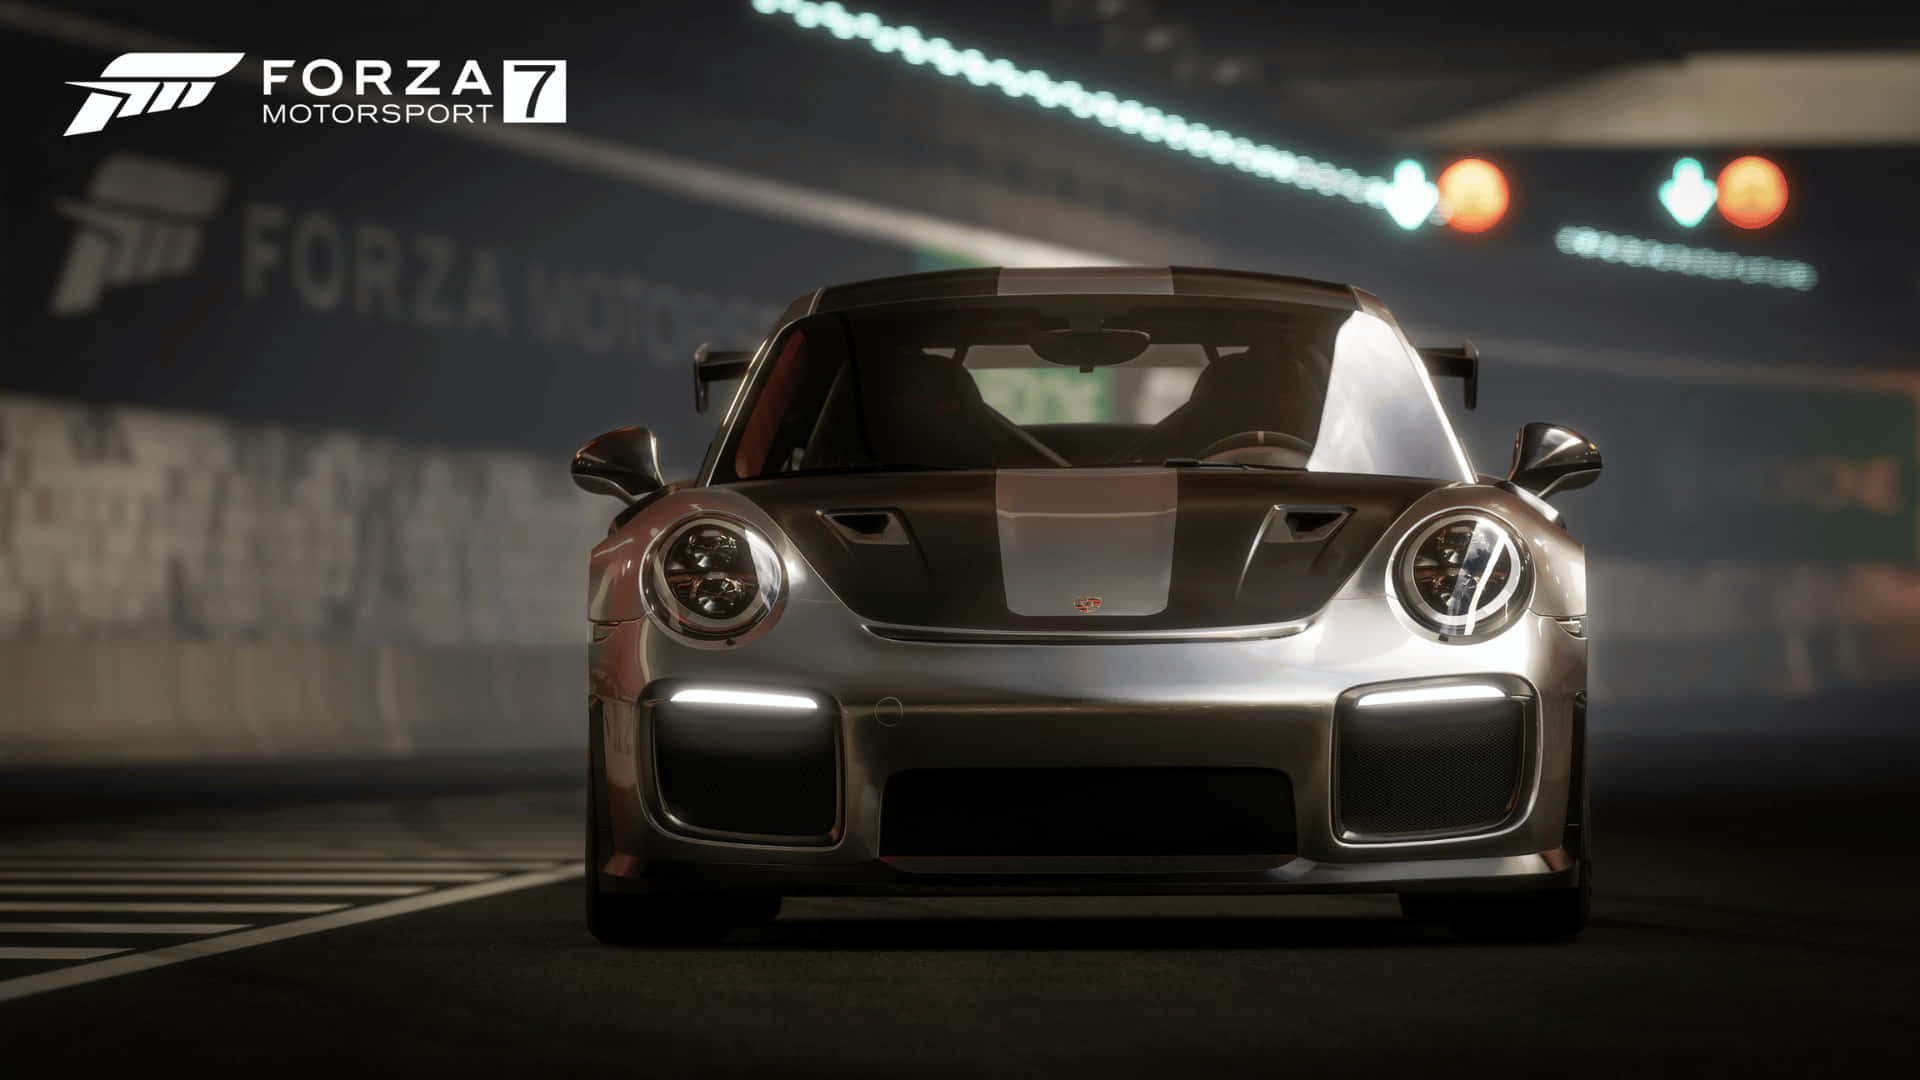 Imagencorre Por Las Calles De Forza Motorsport 7 En 1080p